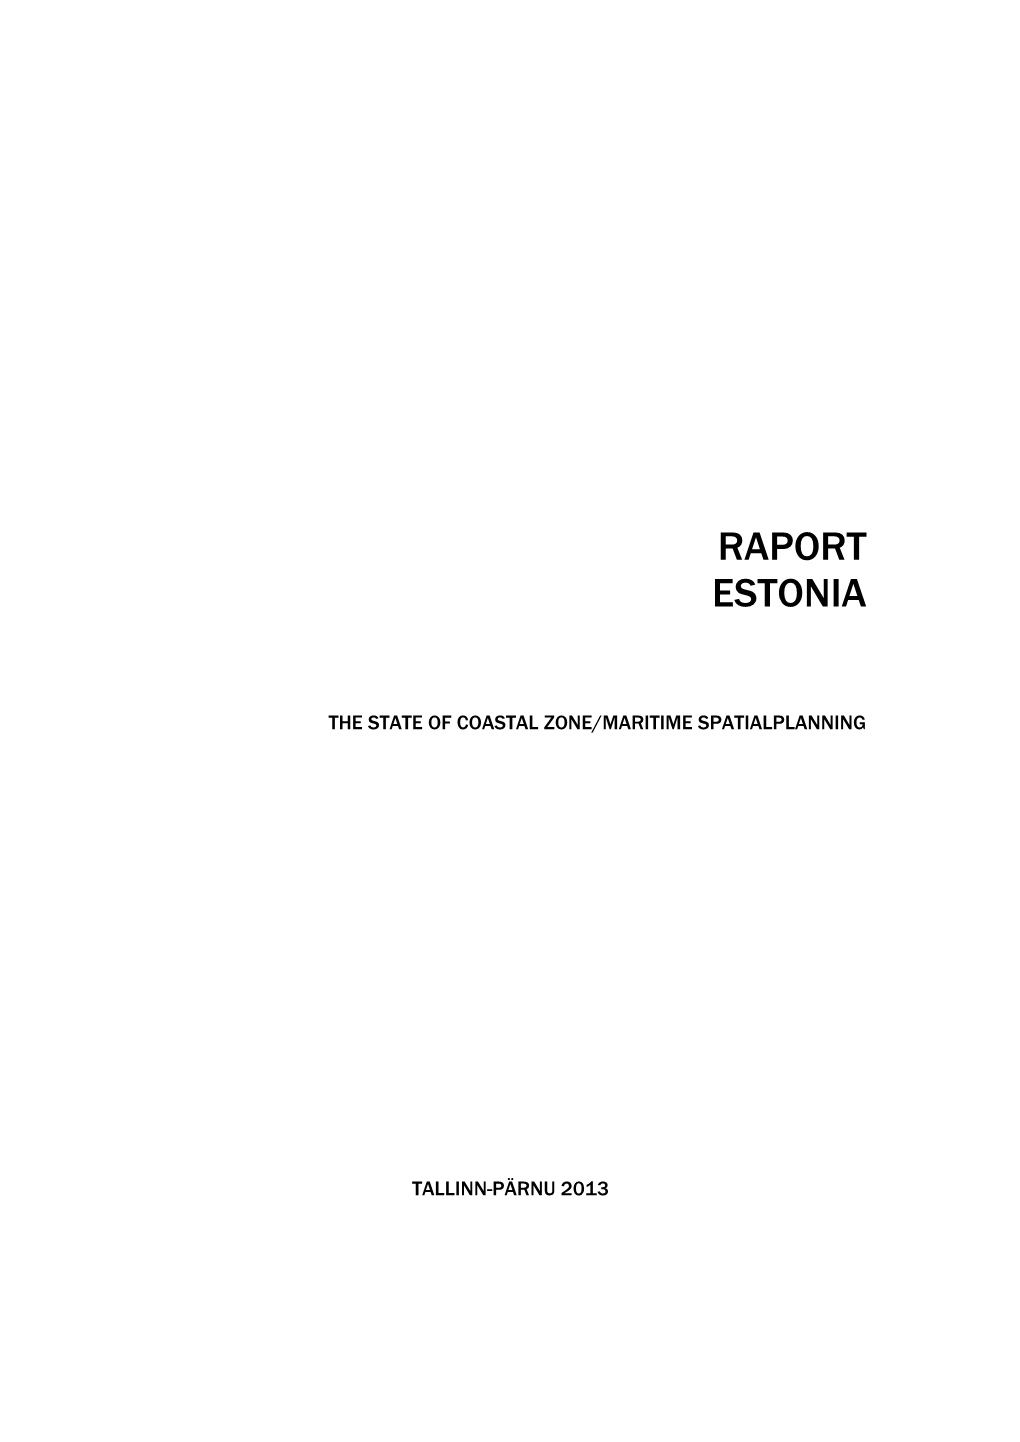 Raport Estonia